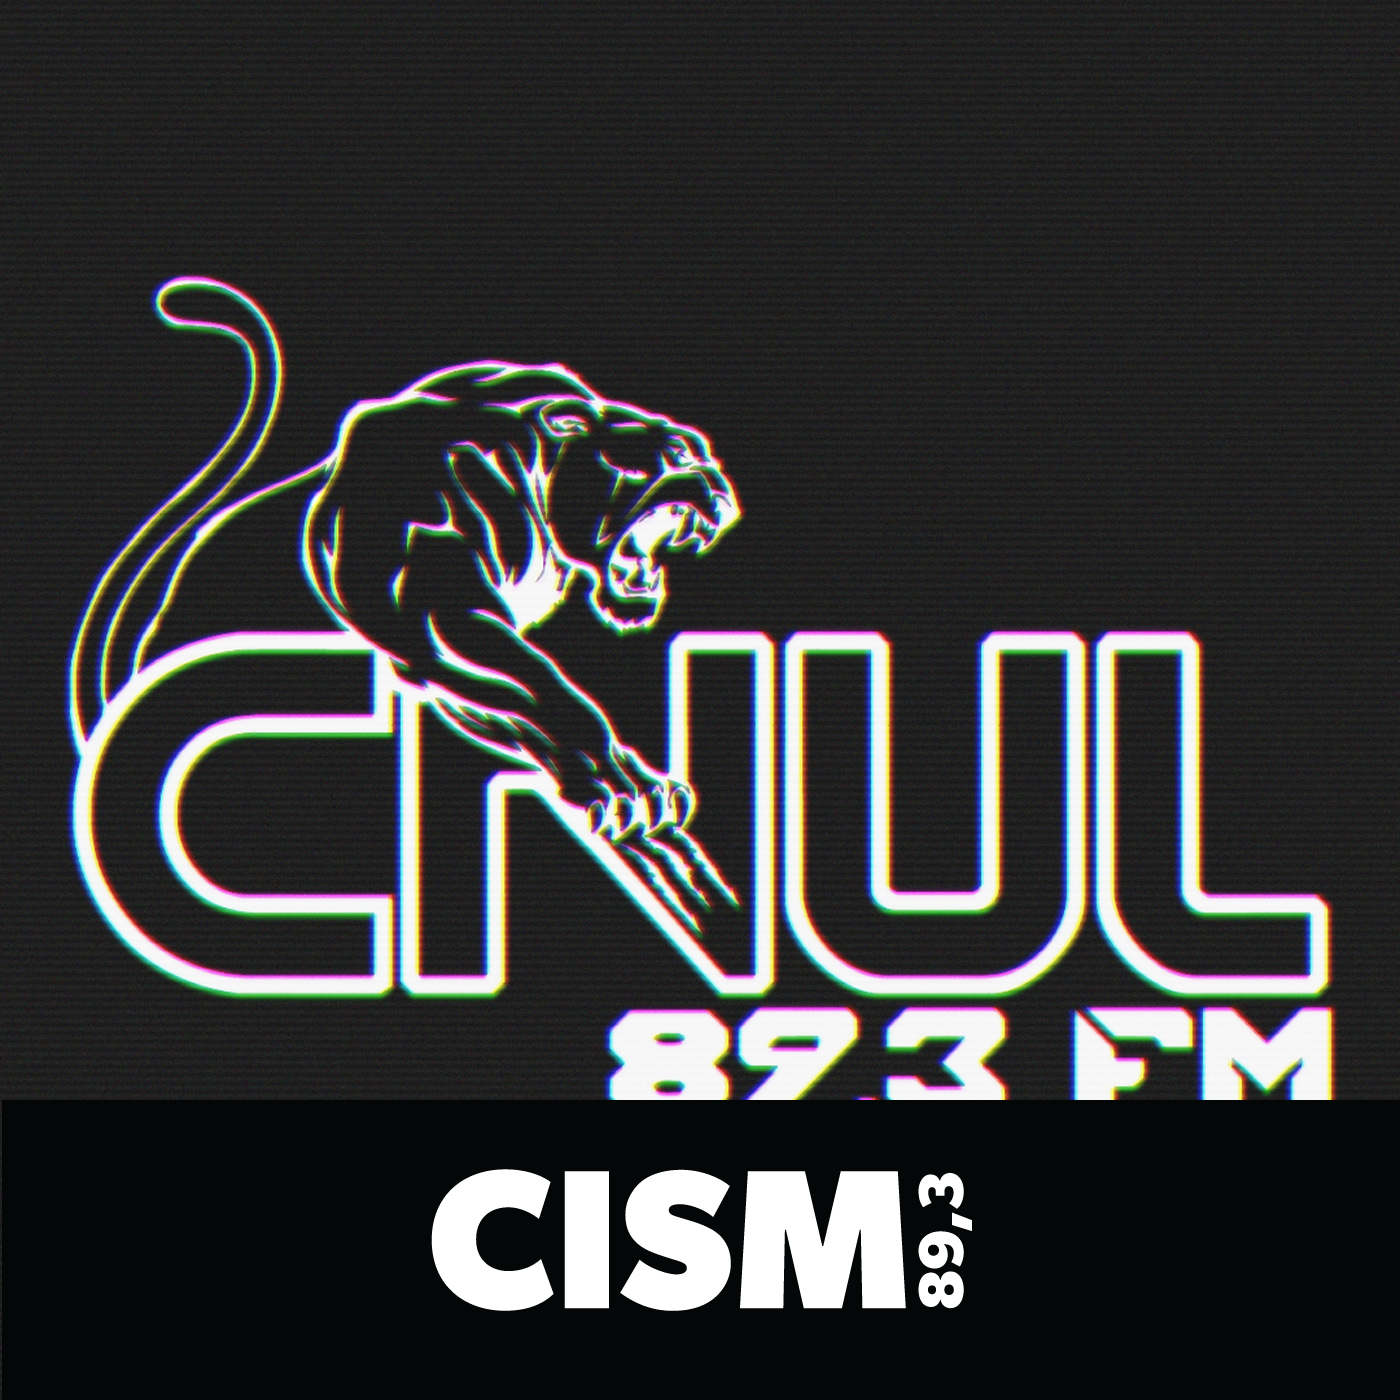 CISM 89.3 : CNUL